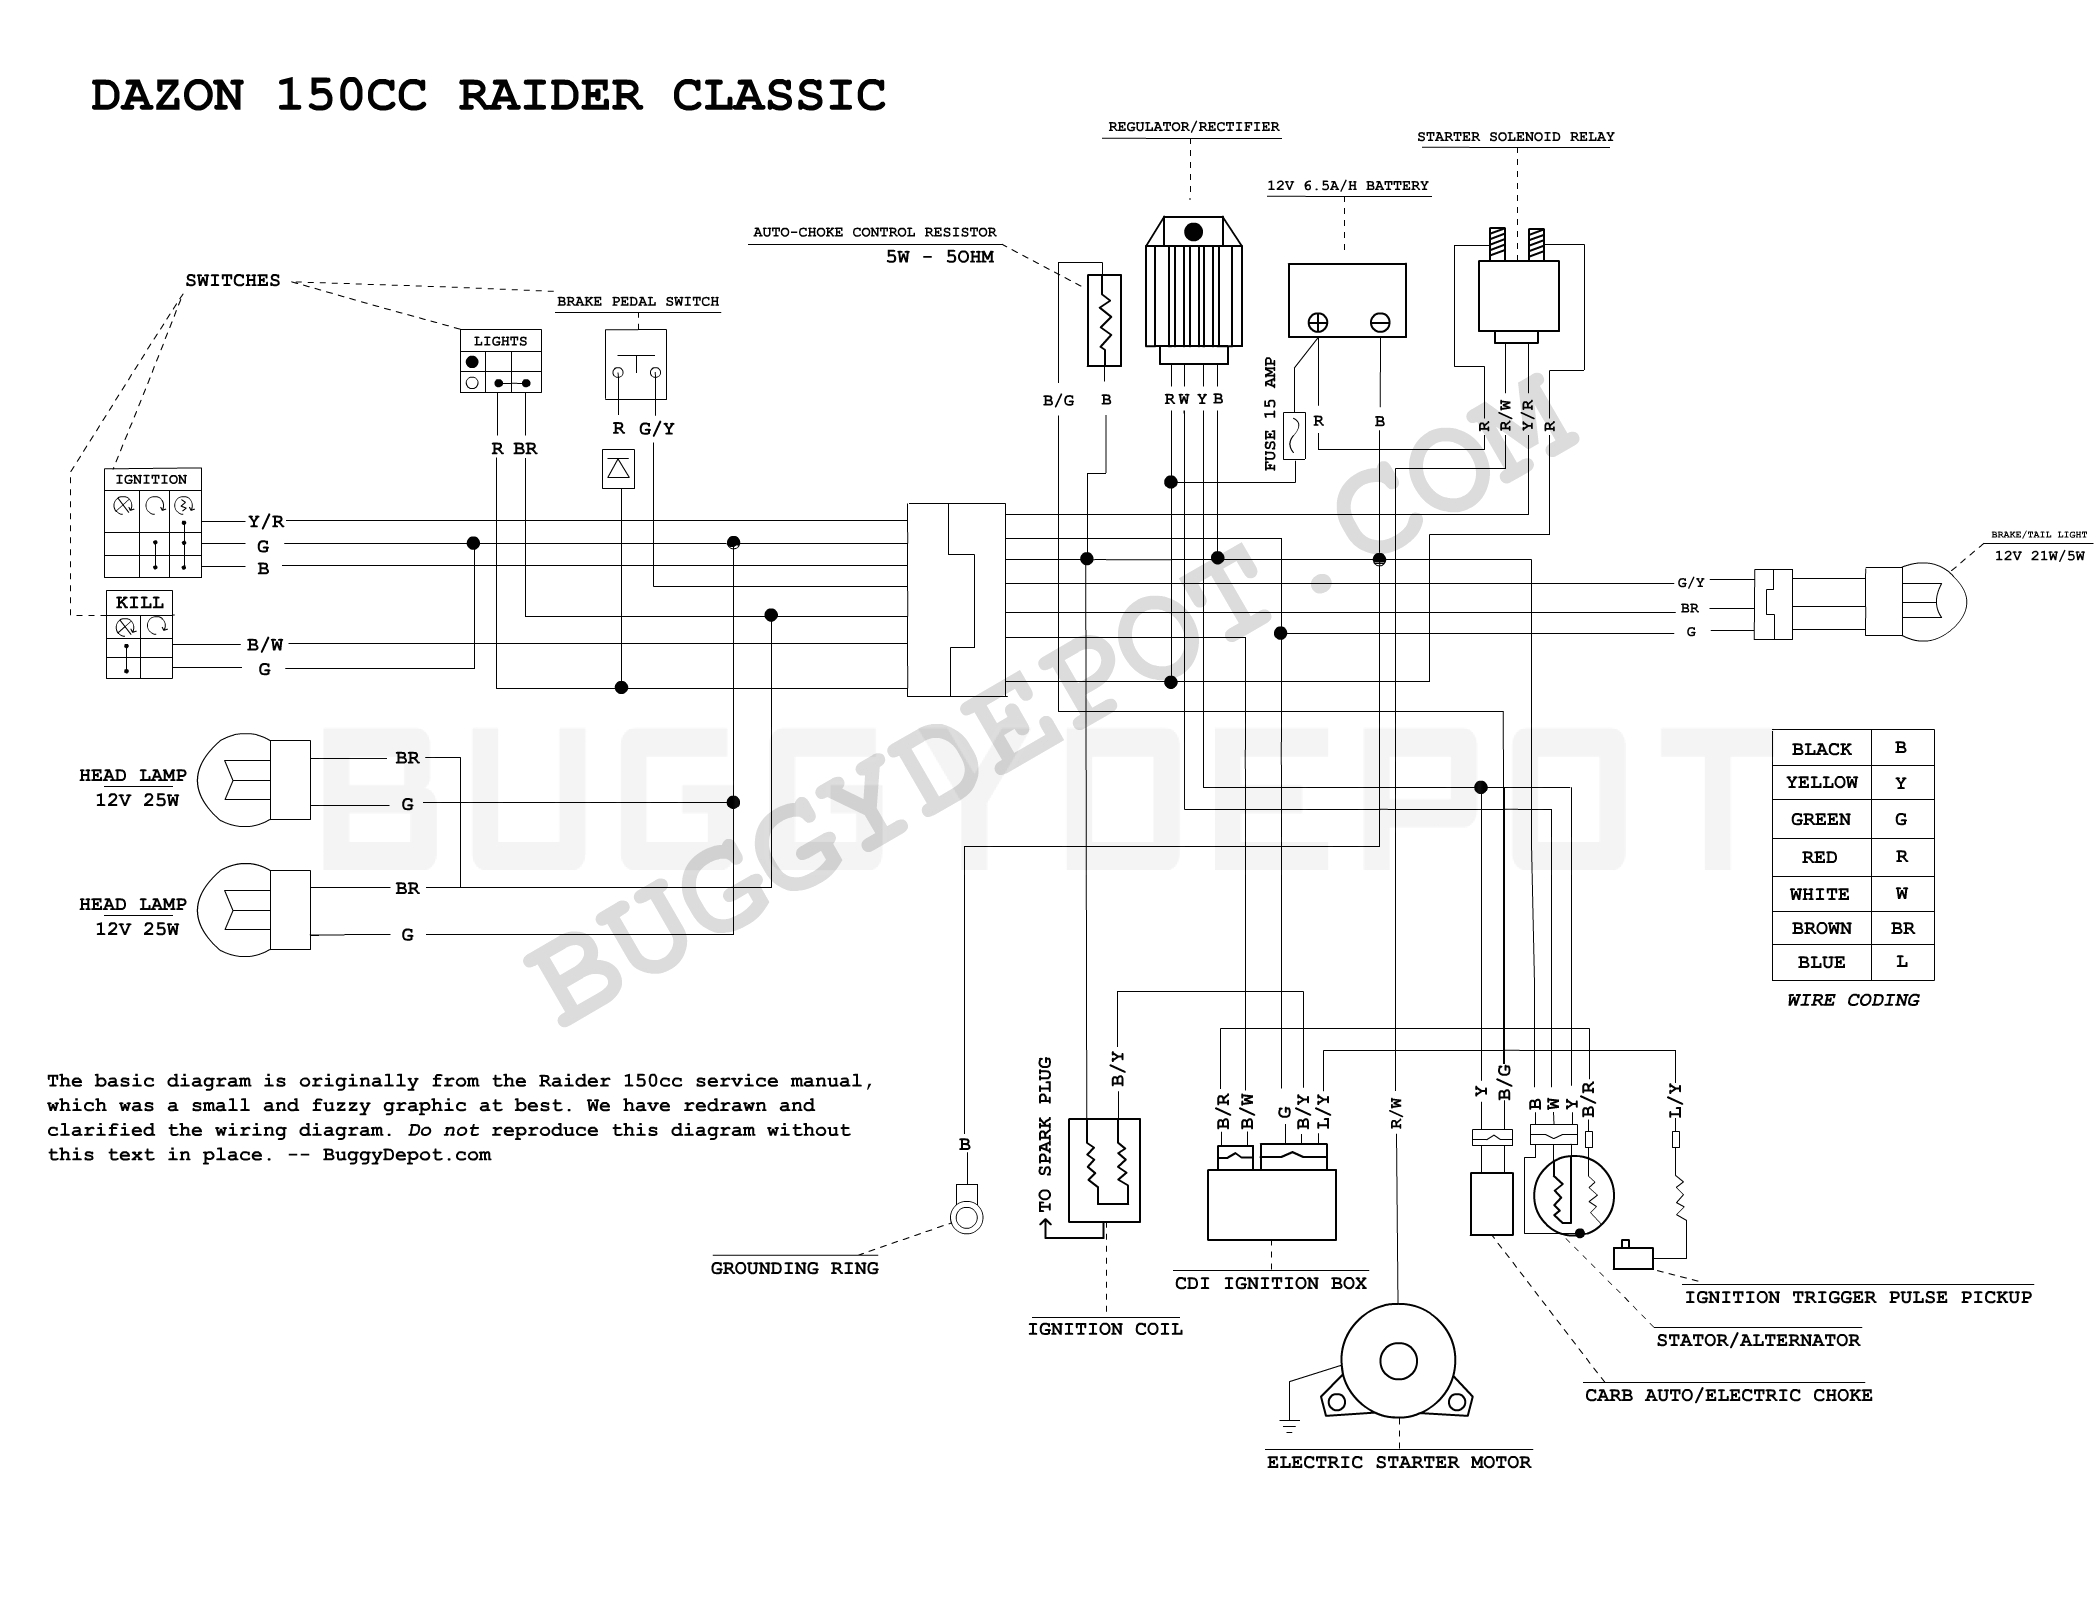 gx 150 wiring diagram wiring diagram blog gx 150 wiring diagram